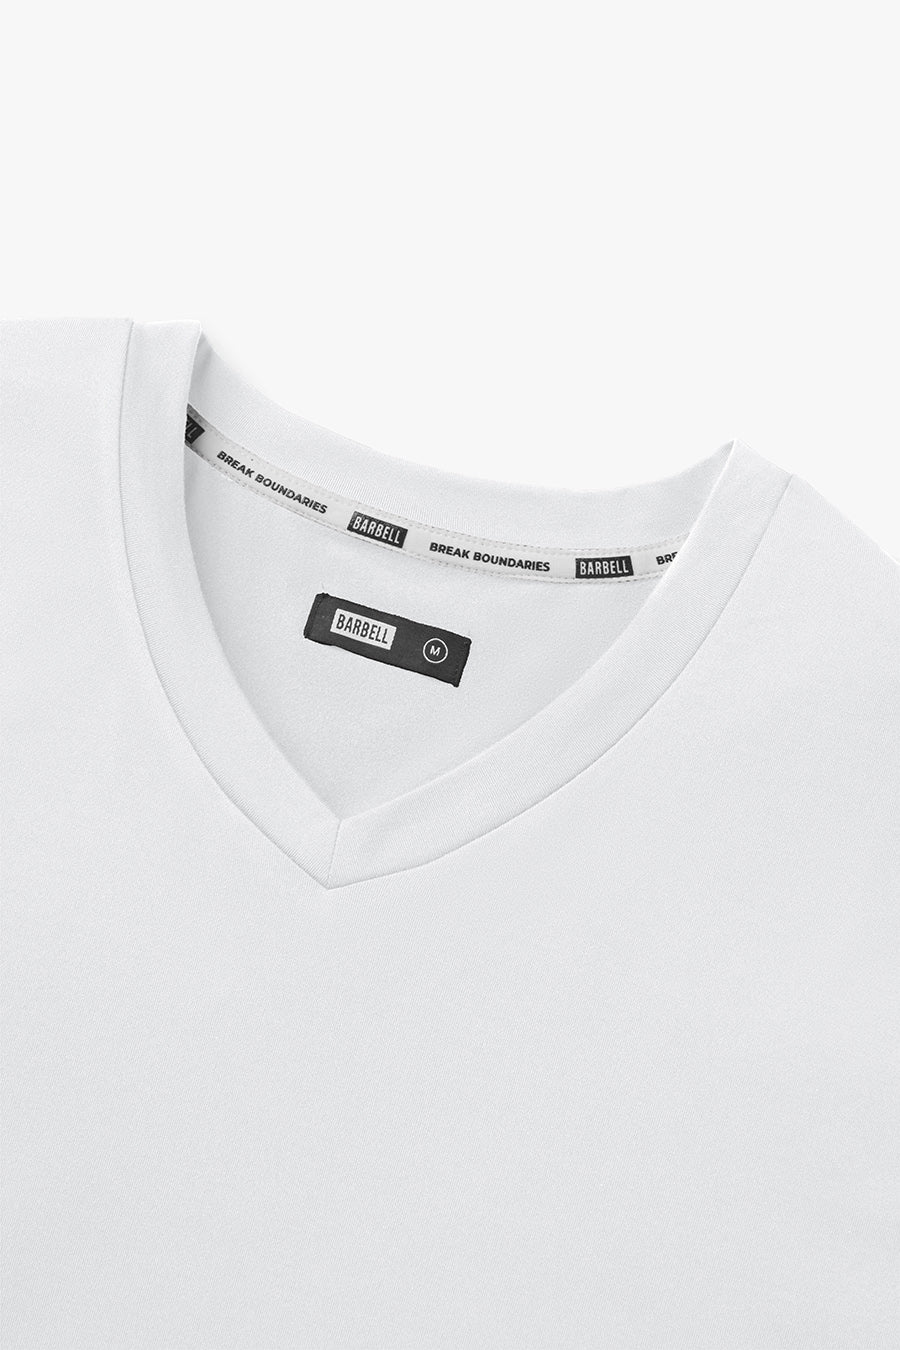 Havok V - White - photo from collar detail #color_white